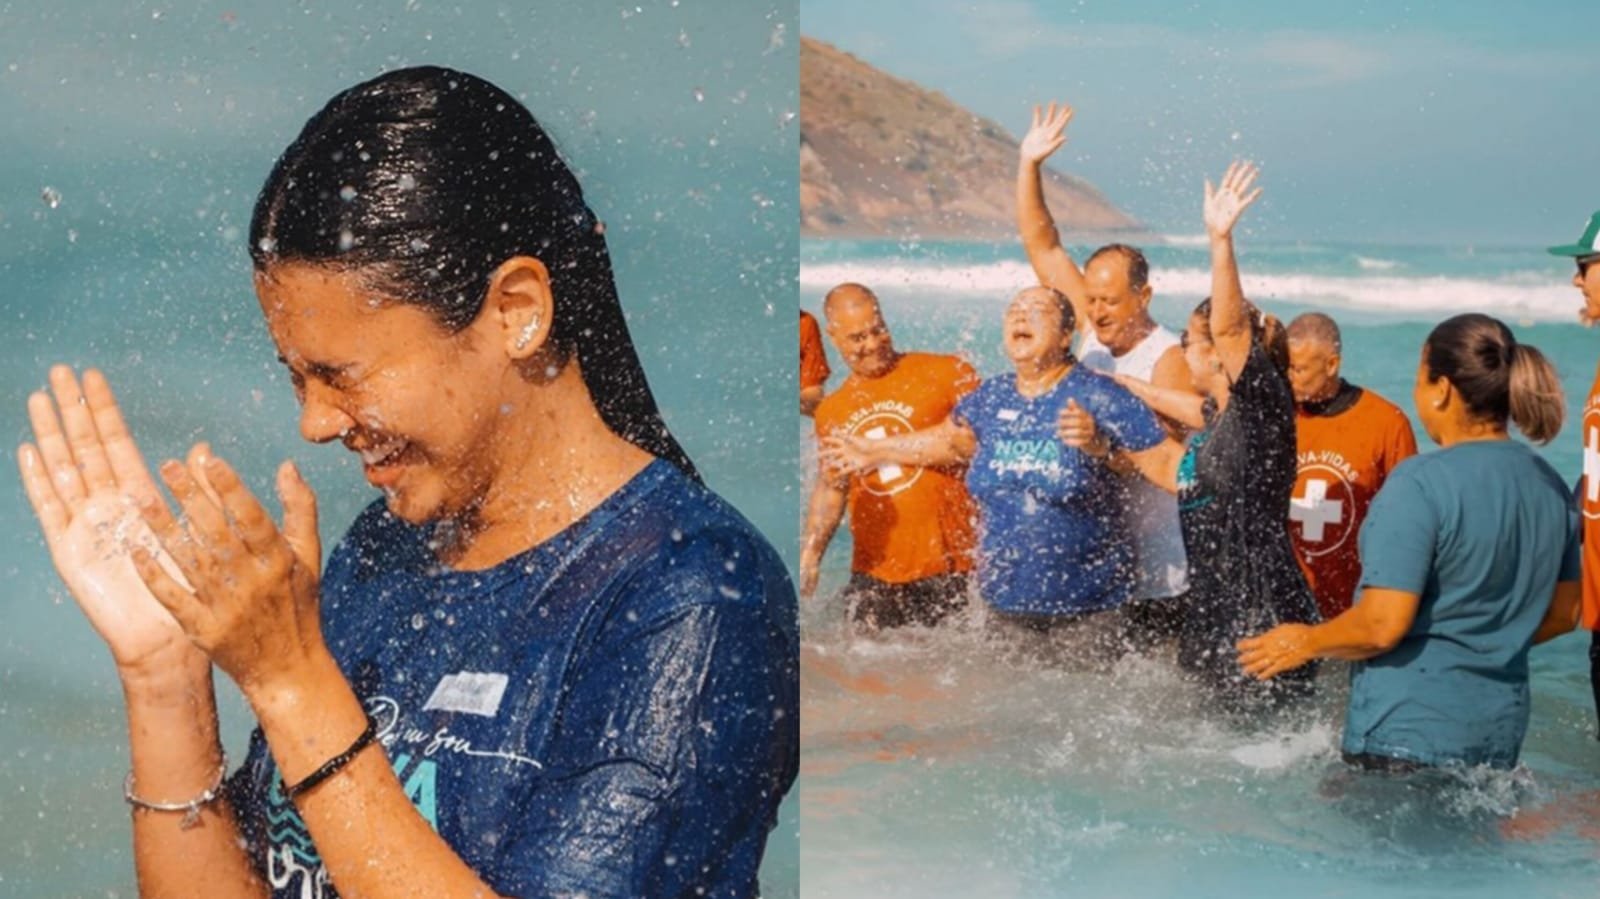 Igreja batiza mais de 1.200 pessoas em praia do Rio de Janeiro